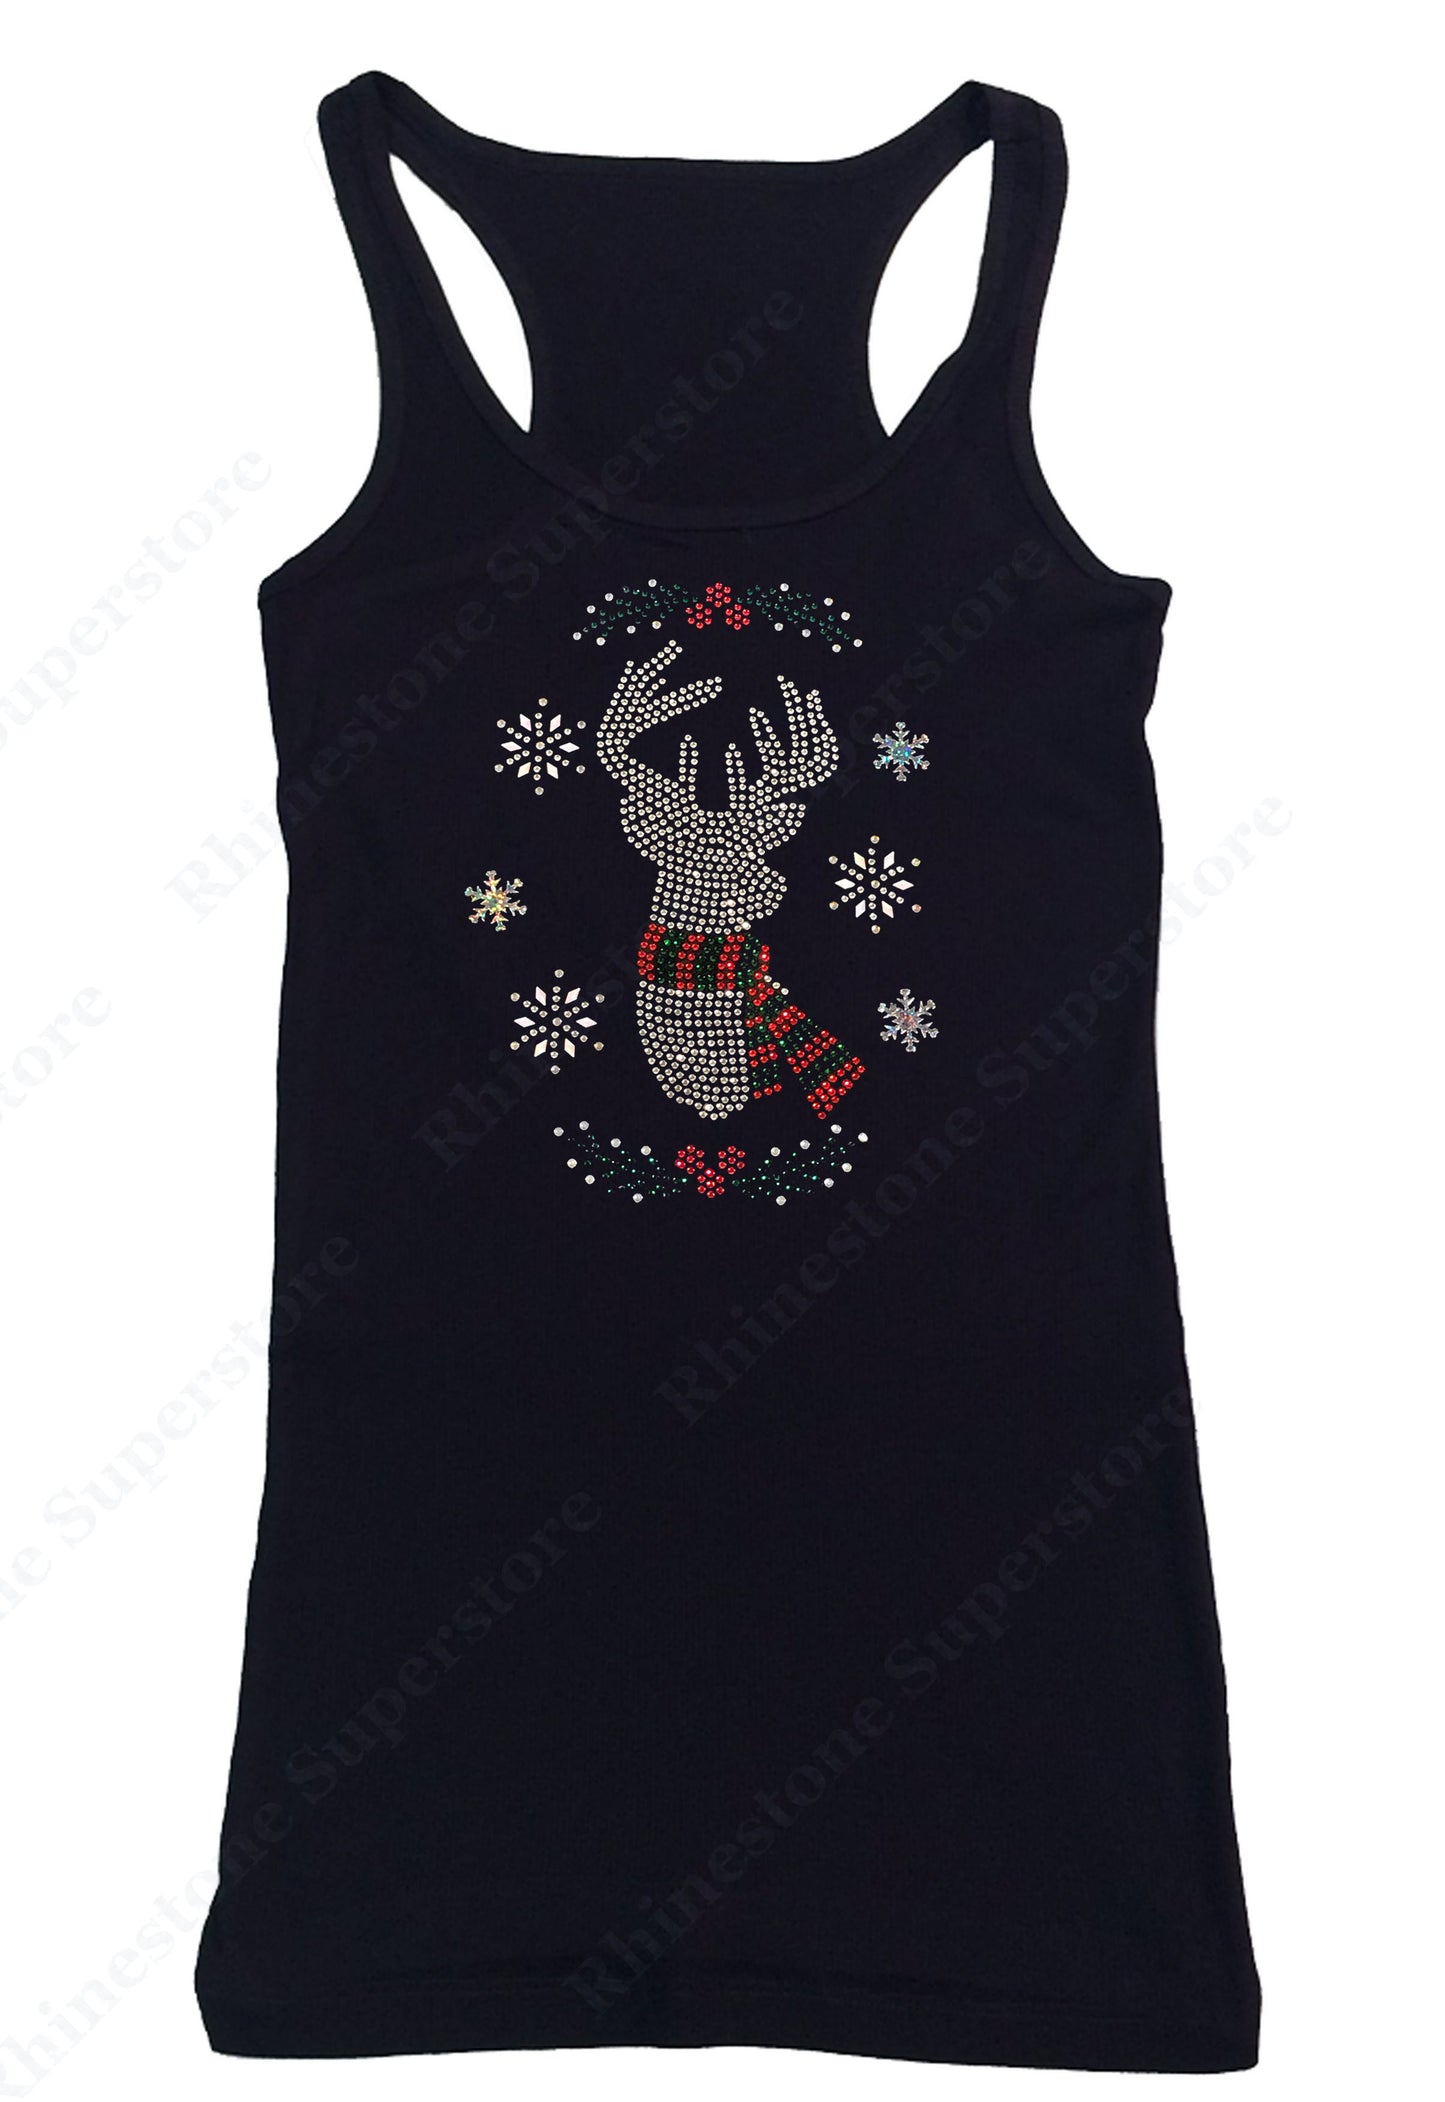 Christmas Reindeer with Snowflakes in Rhinestones tank top